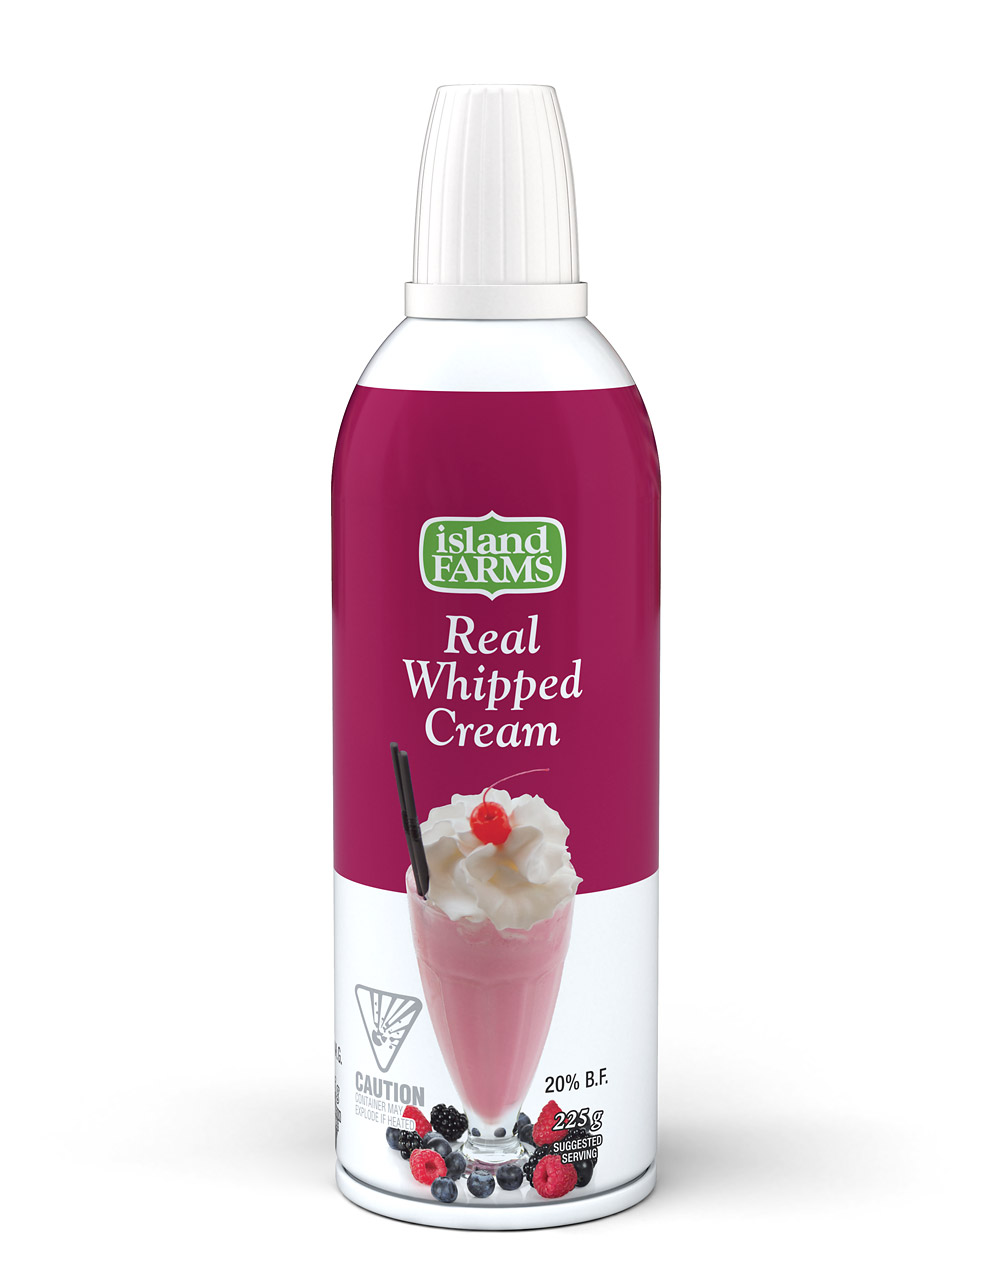 Product rendering: Whipped cream dispenser